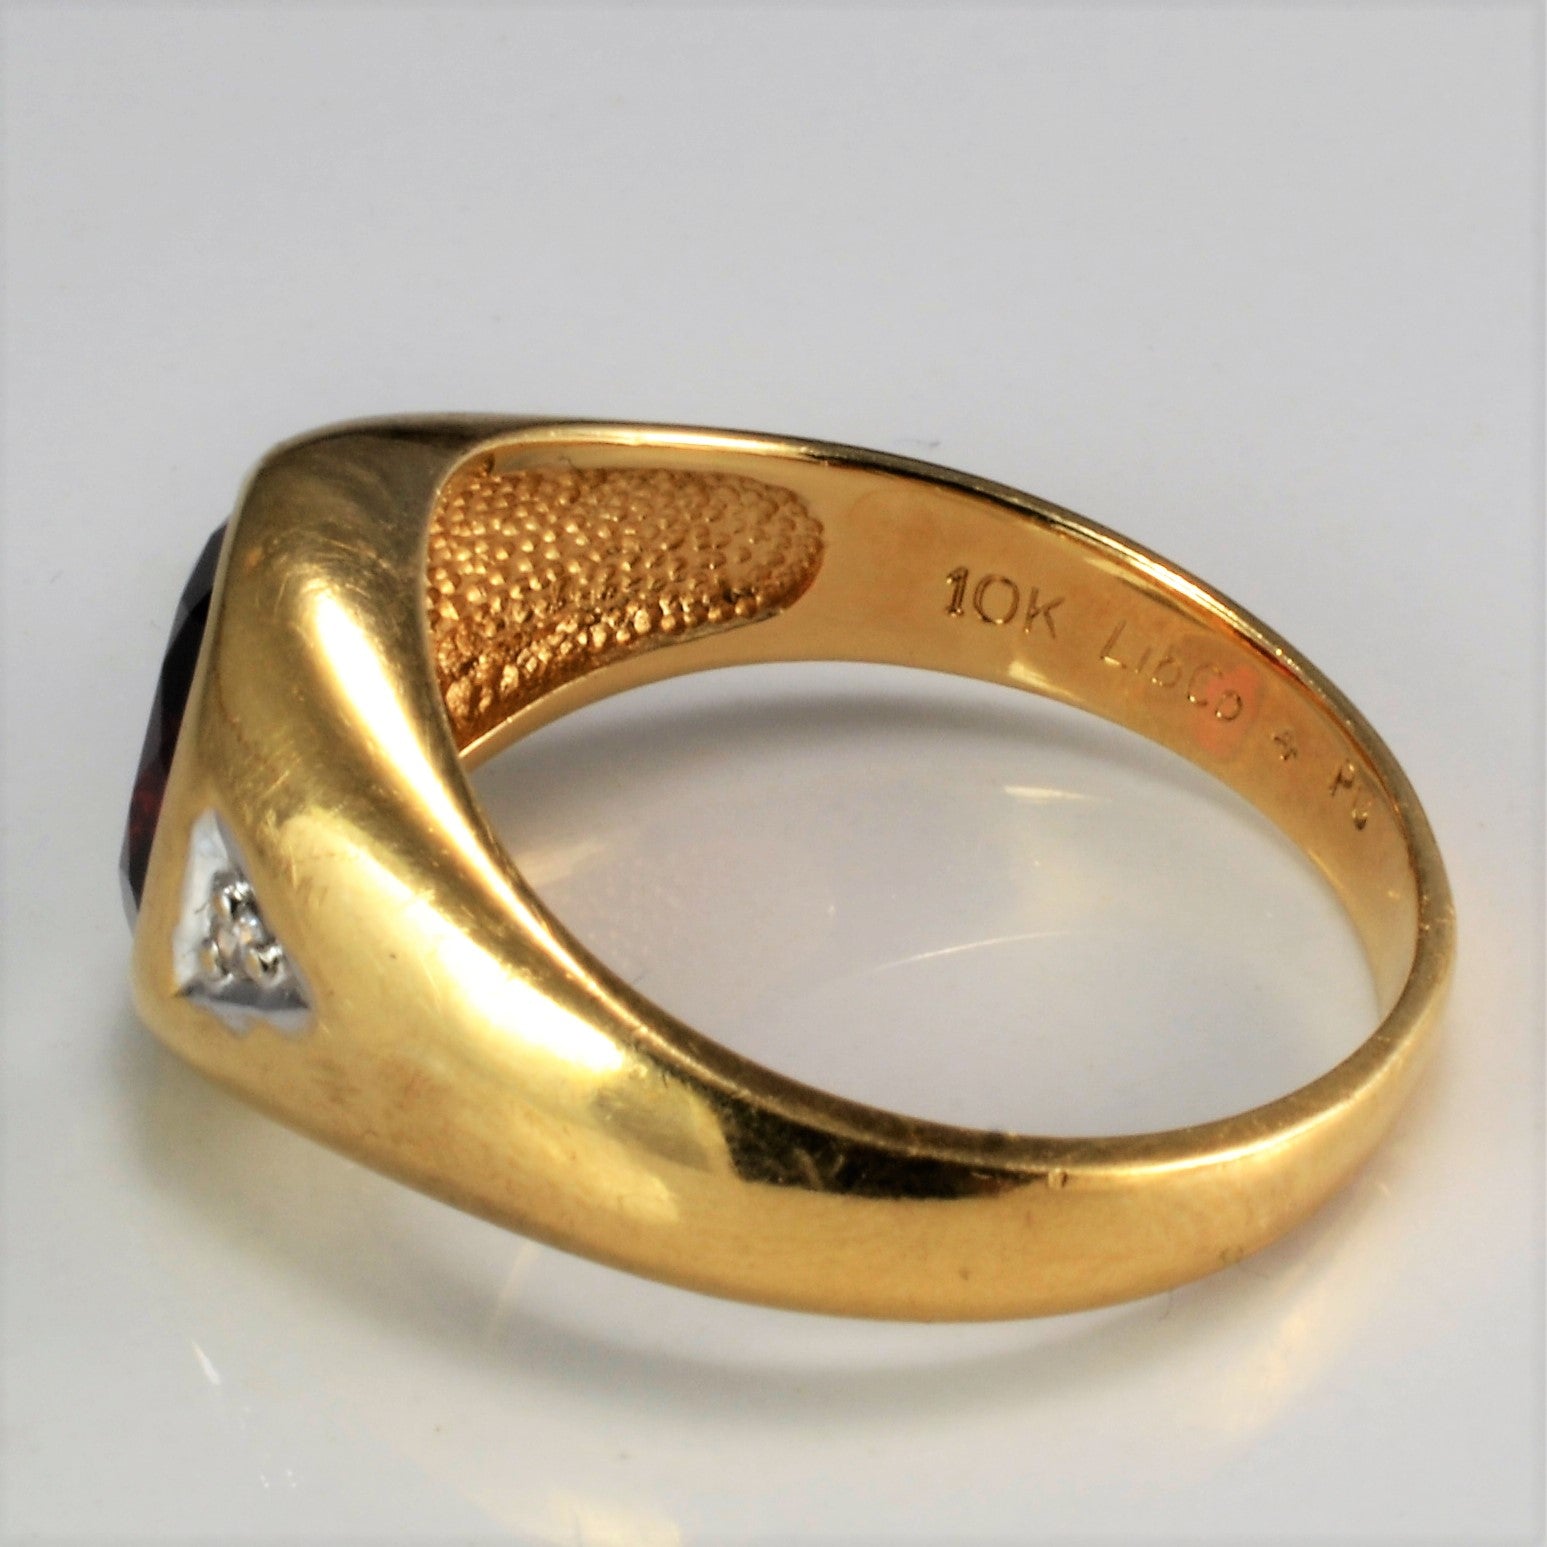 Bezel Set Garnet & Diamond Ring | 0.02 ctw, SZ 9.75 |